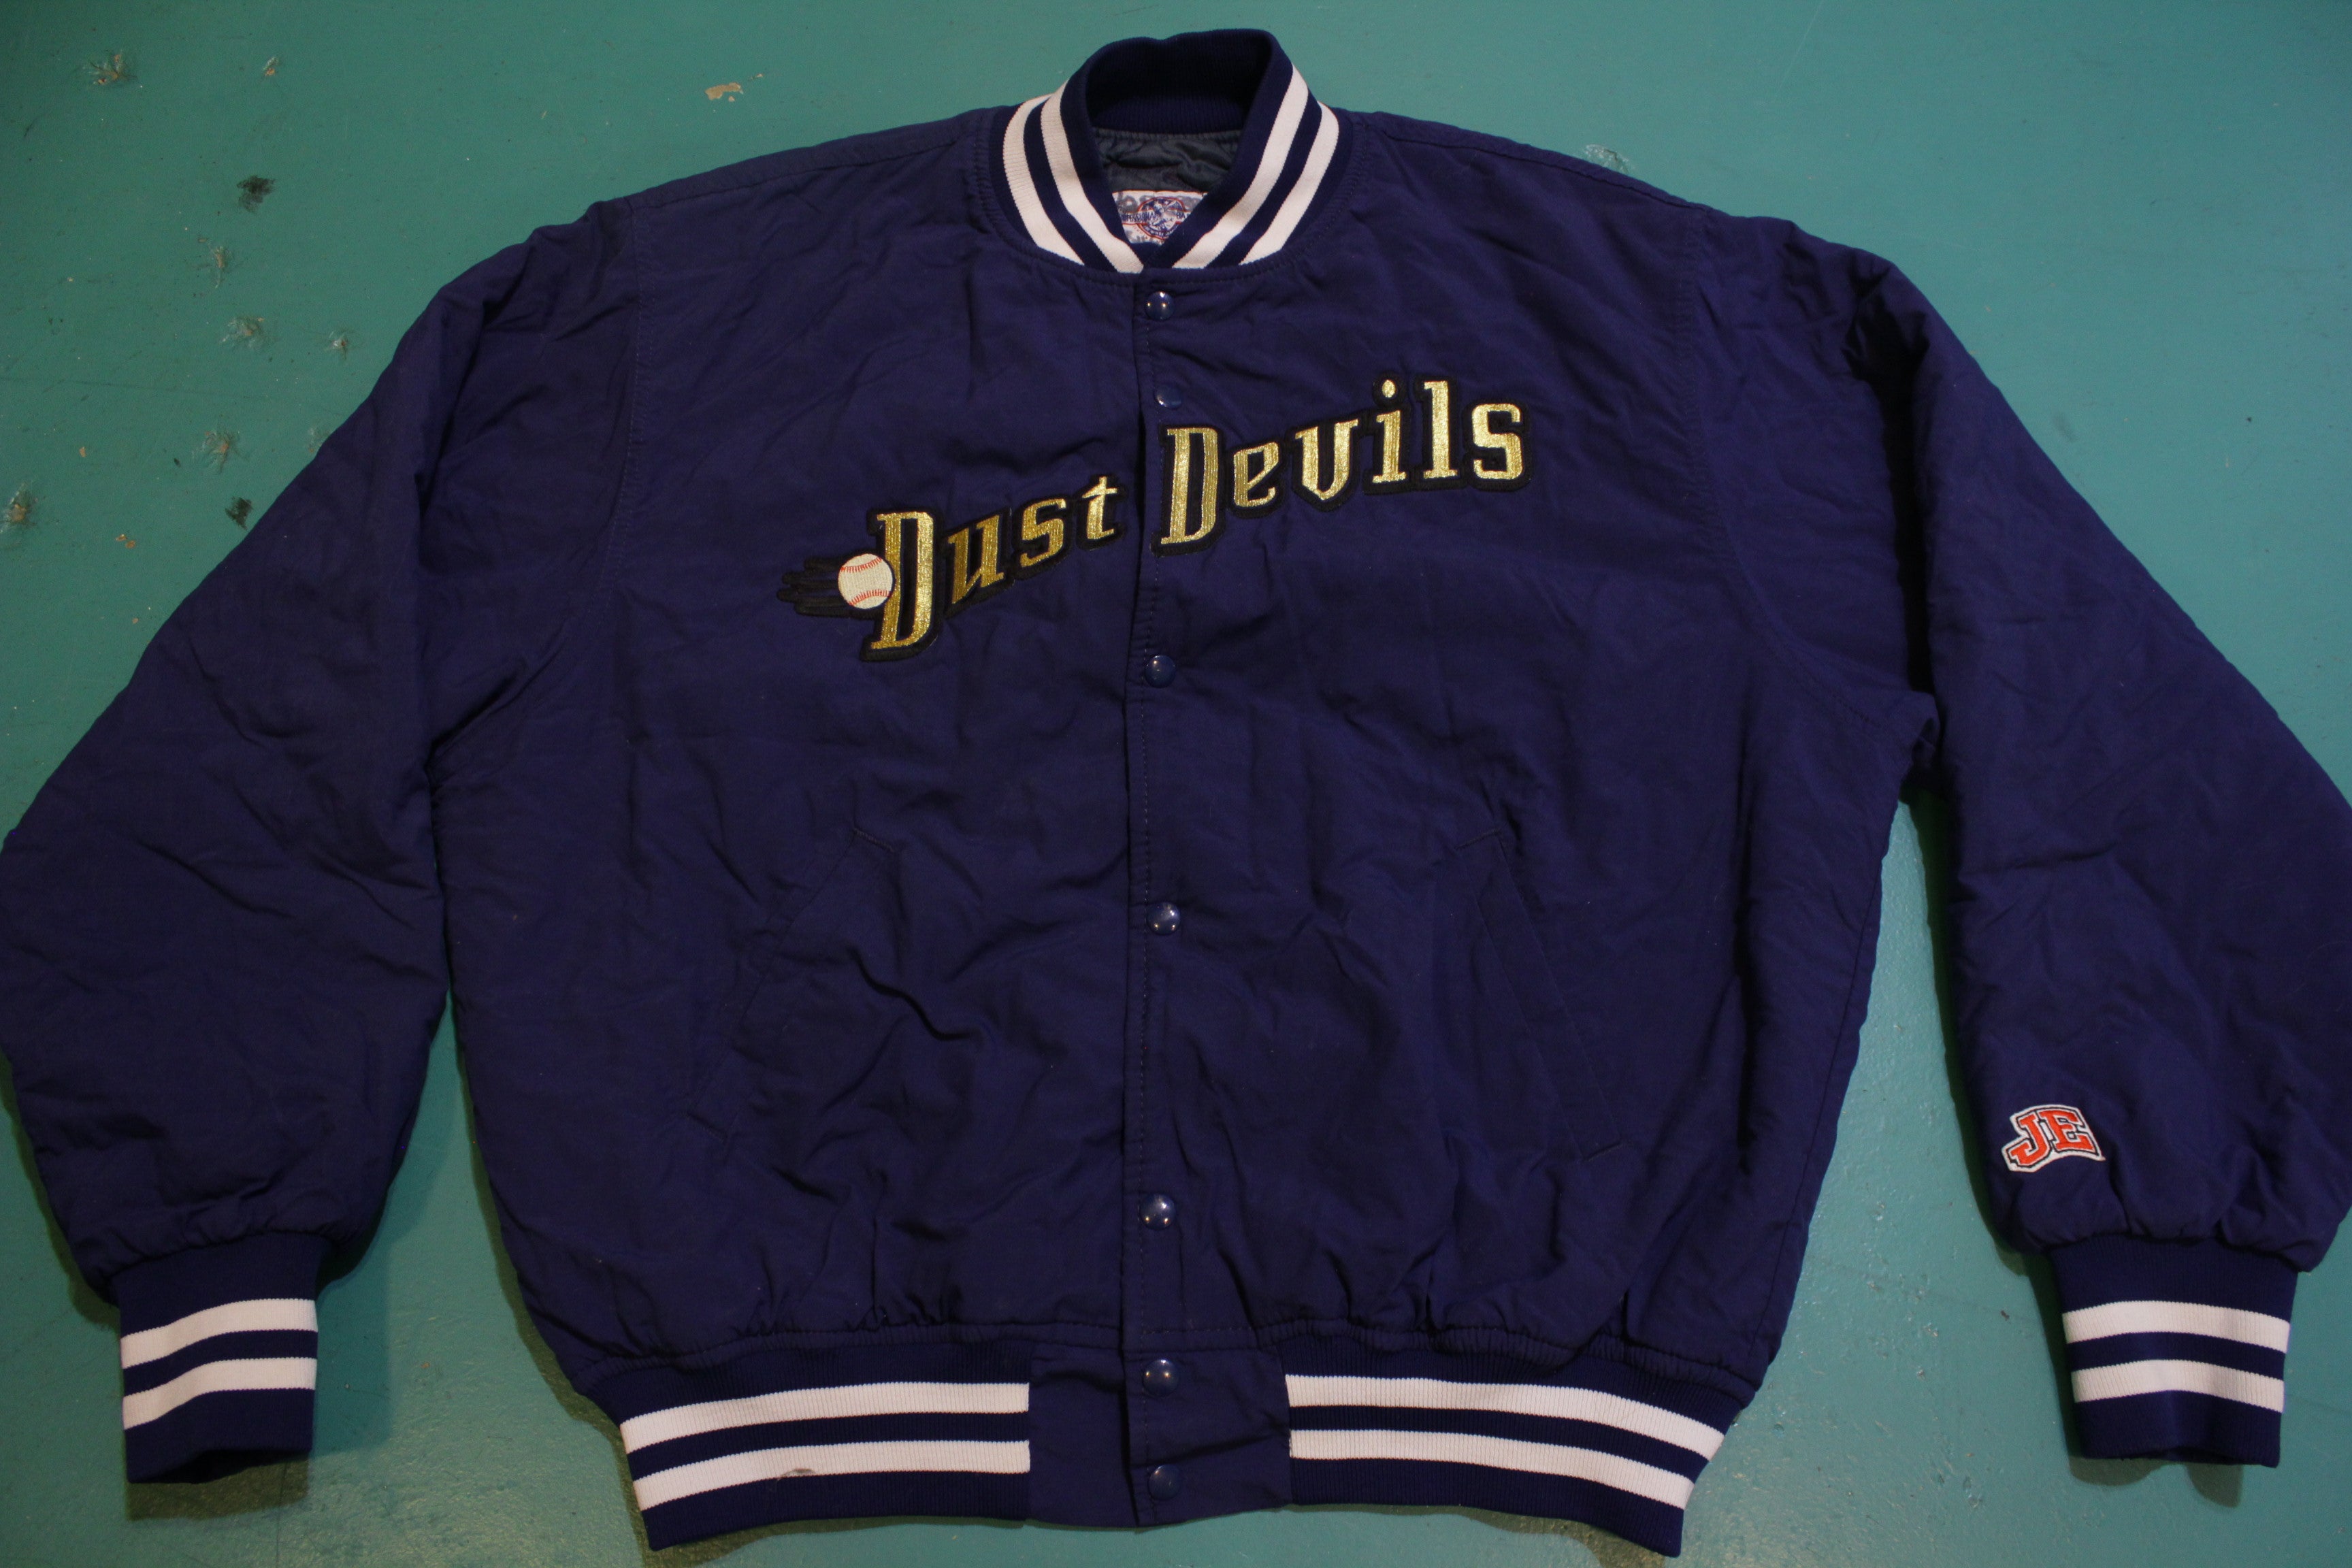 Tri-Cities Dust Devils 2001 Minor League Baseball Vintage Quilt